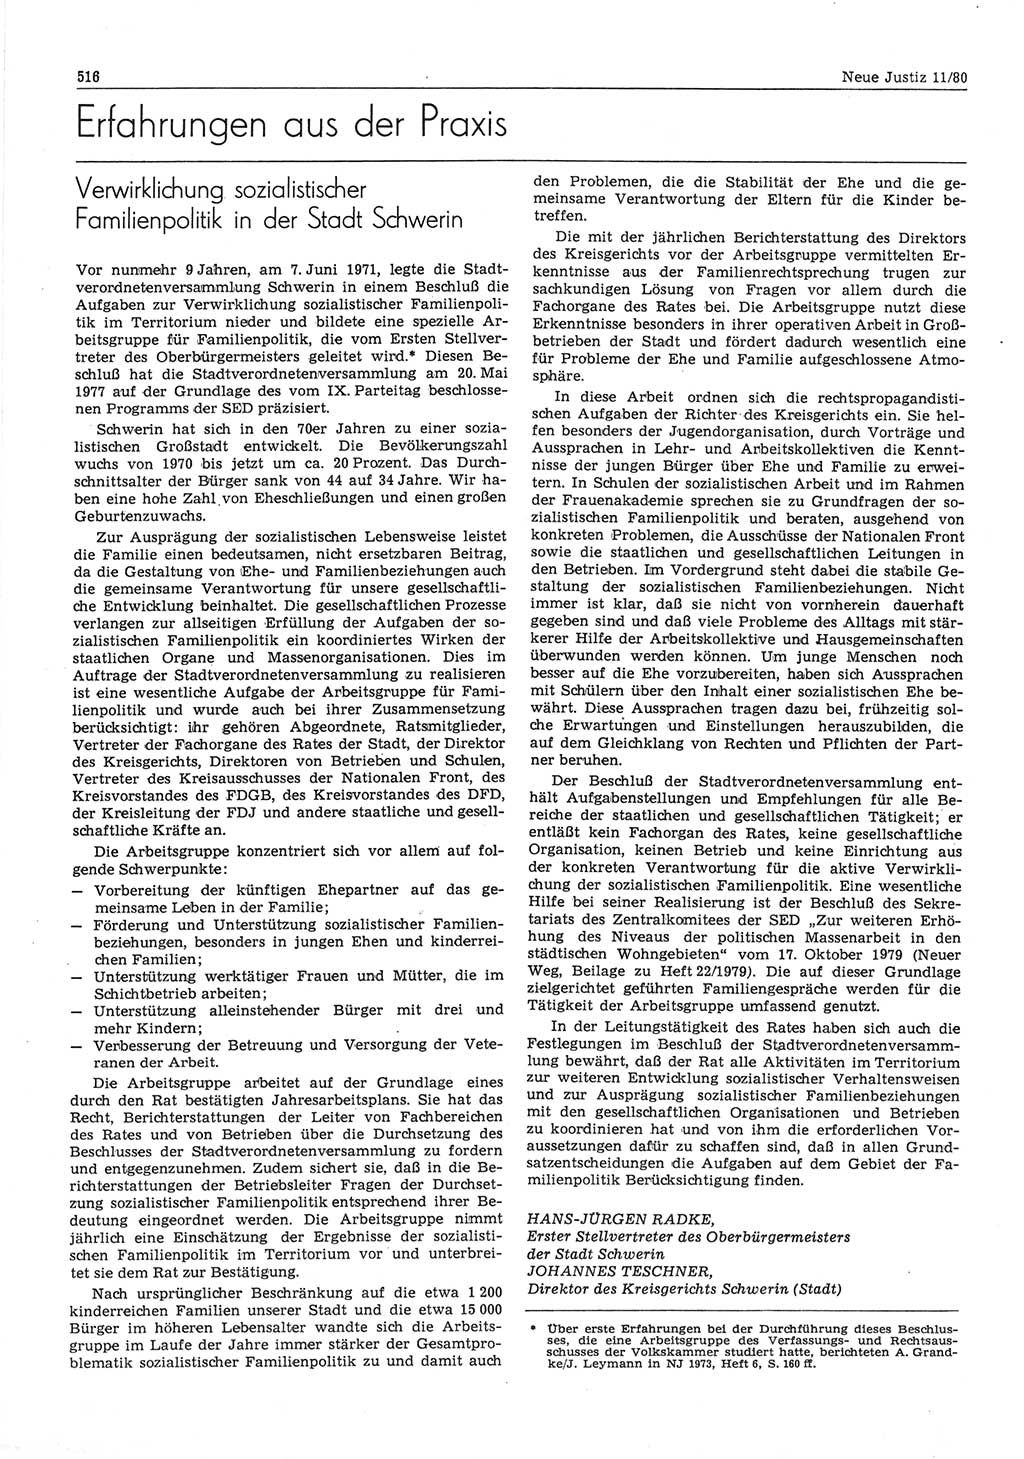 Neue Justiz (NJ), Zeitschrift für sozialistisches Recht und Gesetzlichkeit [Deutsche Demokratische Republik (DDR)], 34. Jahrgang 1980, Seite 516 (NJ DDR 1980, S. 516)